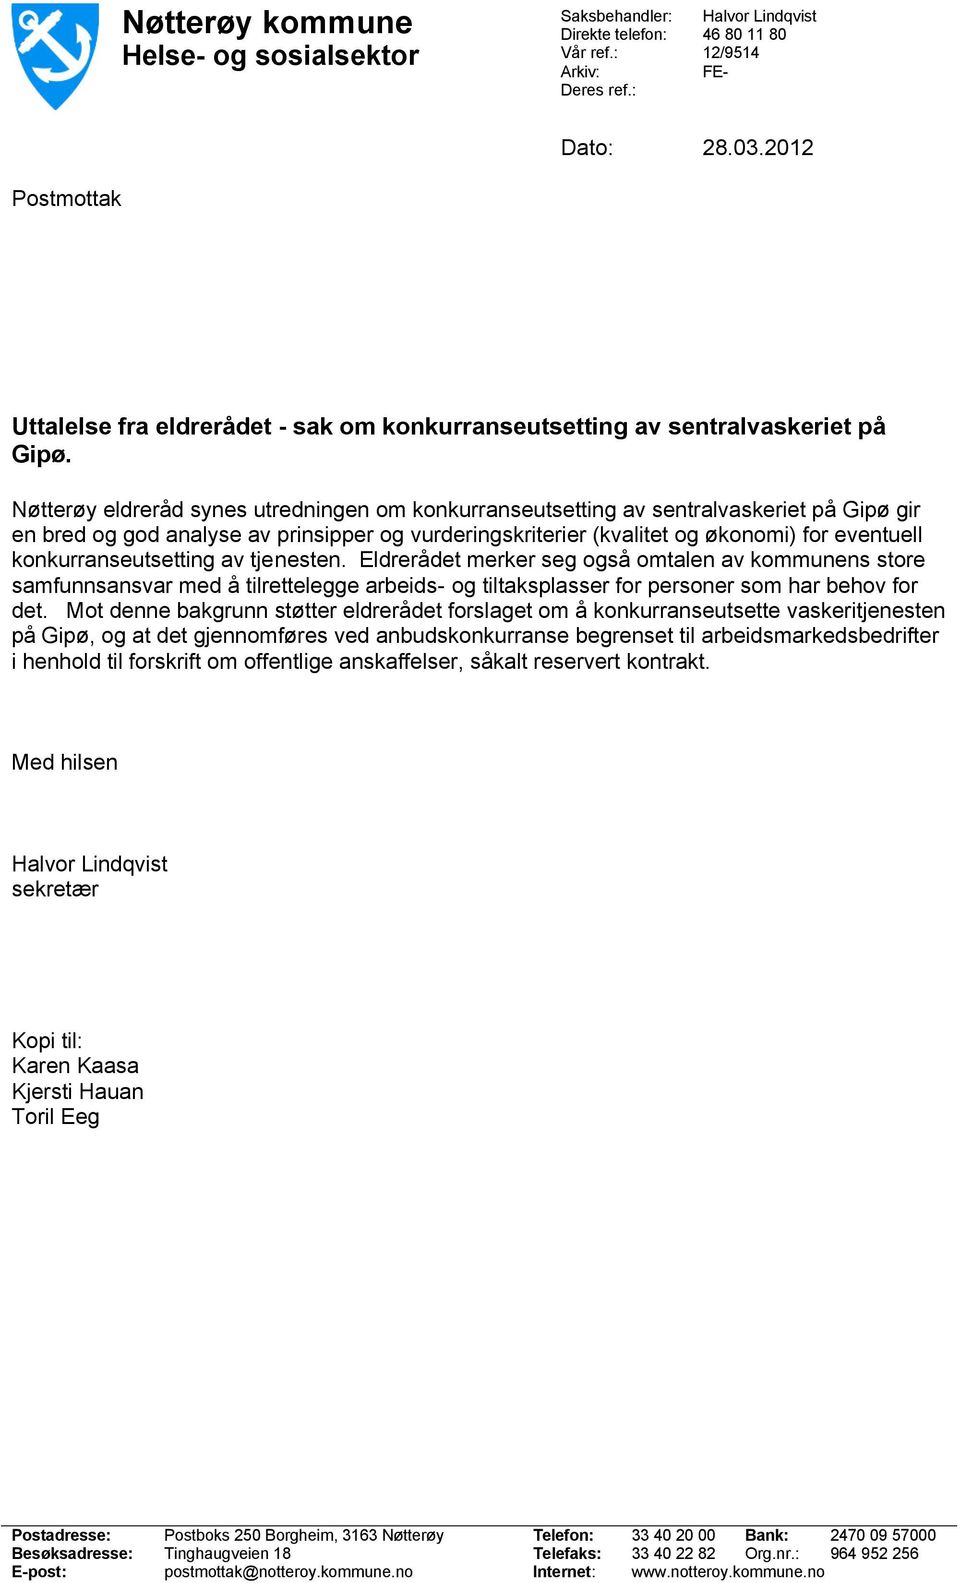 Nøtterøy eldreråd synes utredningen om konkurranseutsetting av sentralvaskeriet på Gipø gir en bred og god analyse av prinsipper og vurderingskriterier (kvalitet og økonomi) for eventuell